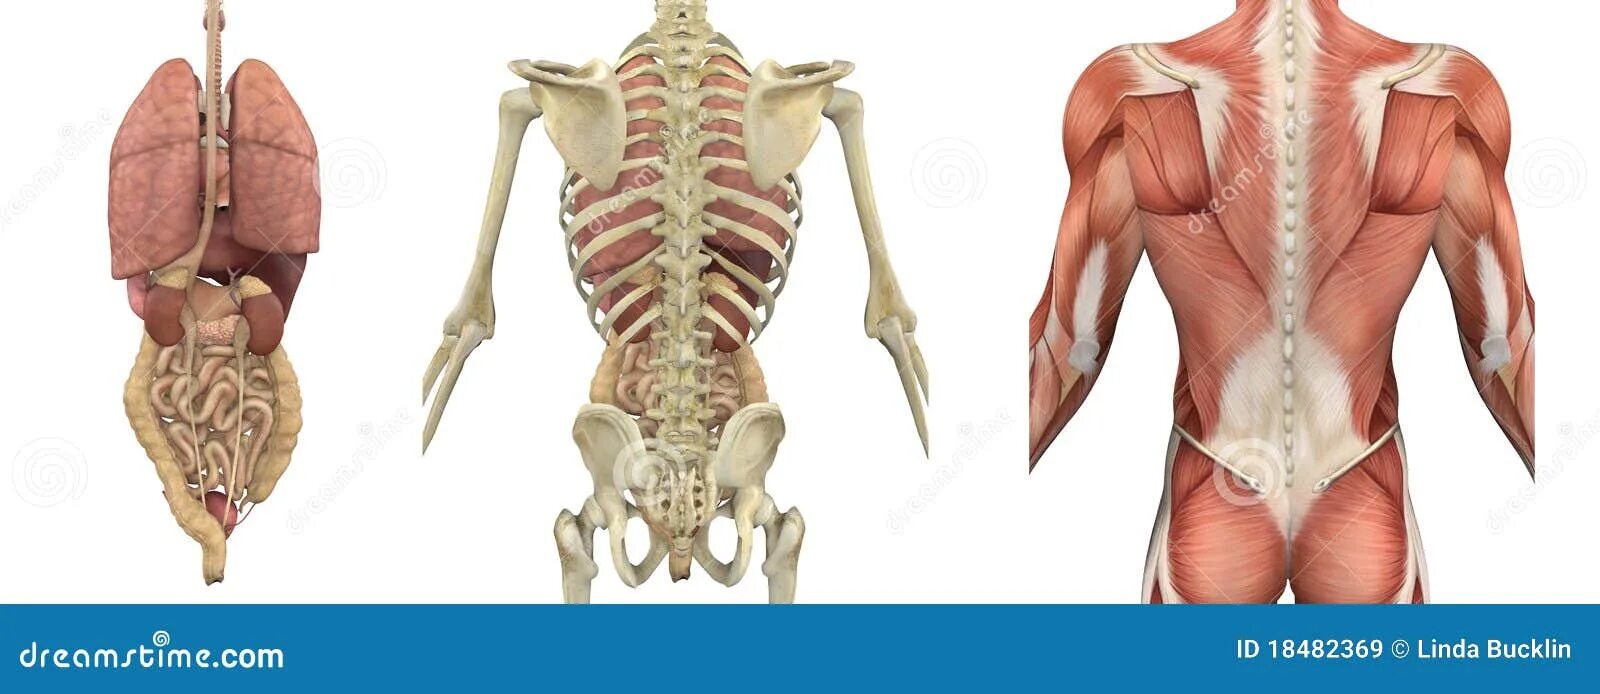 Органы в пояснице. Скелет человека со спины с органами. Внутренние органы со спины.